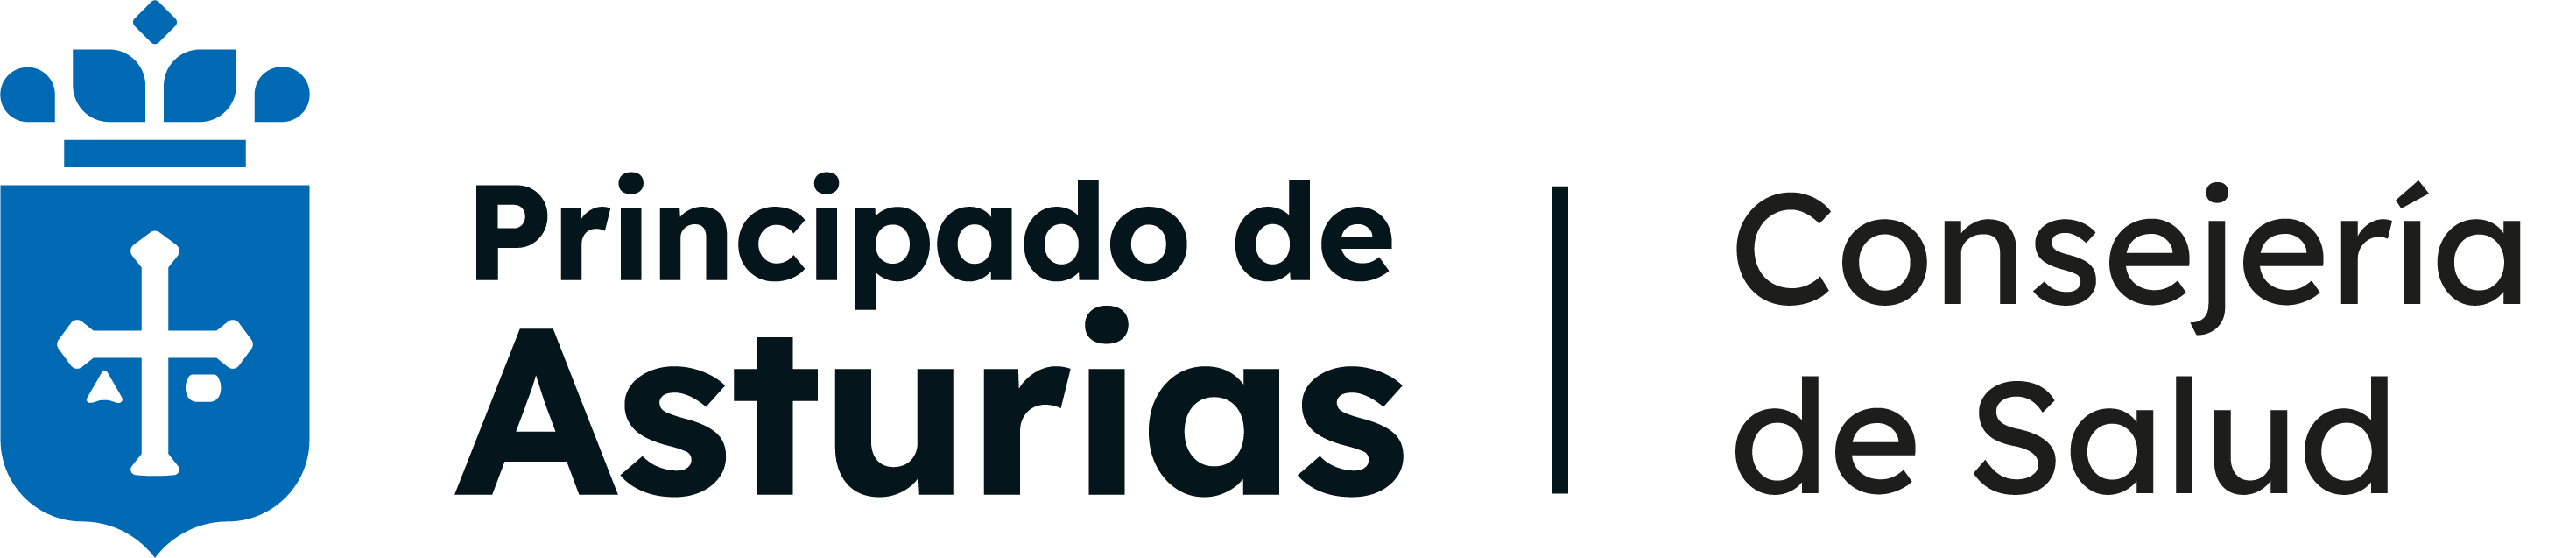 Principado de Asturias - Consejería de salud